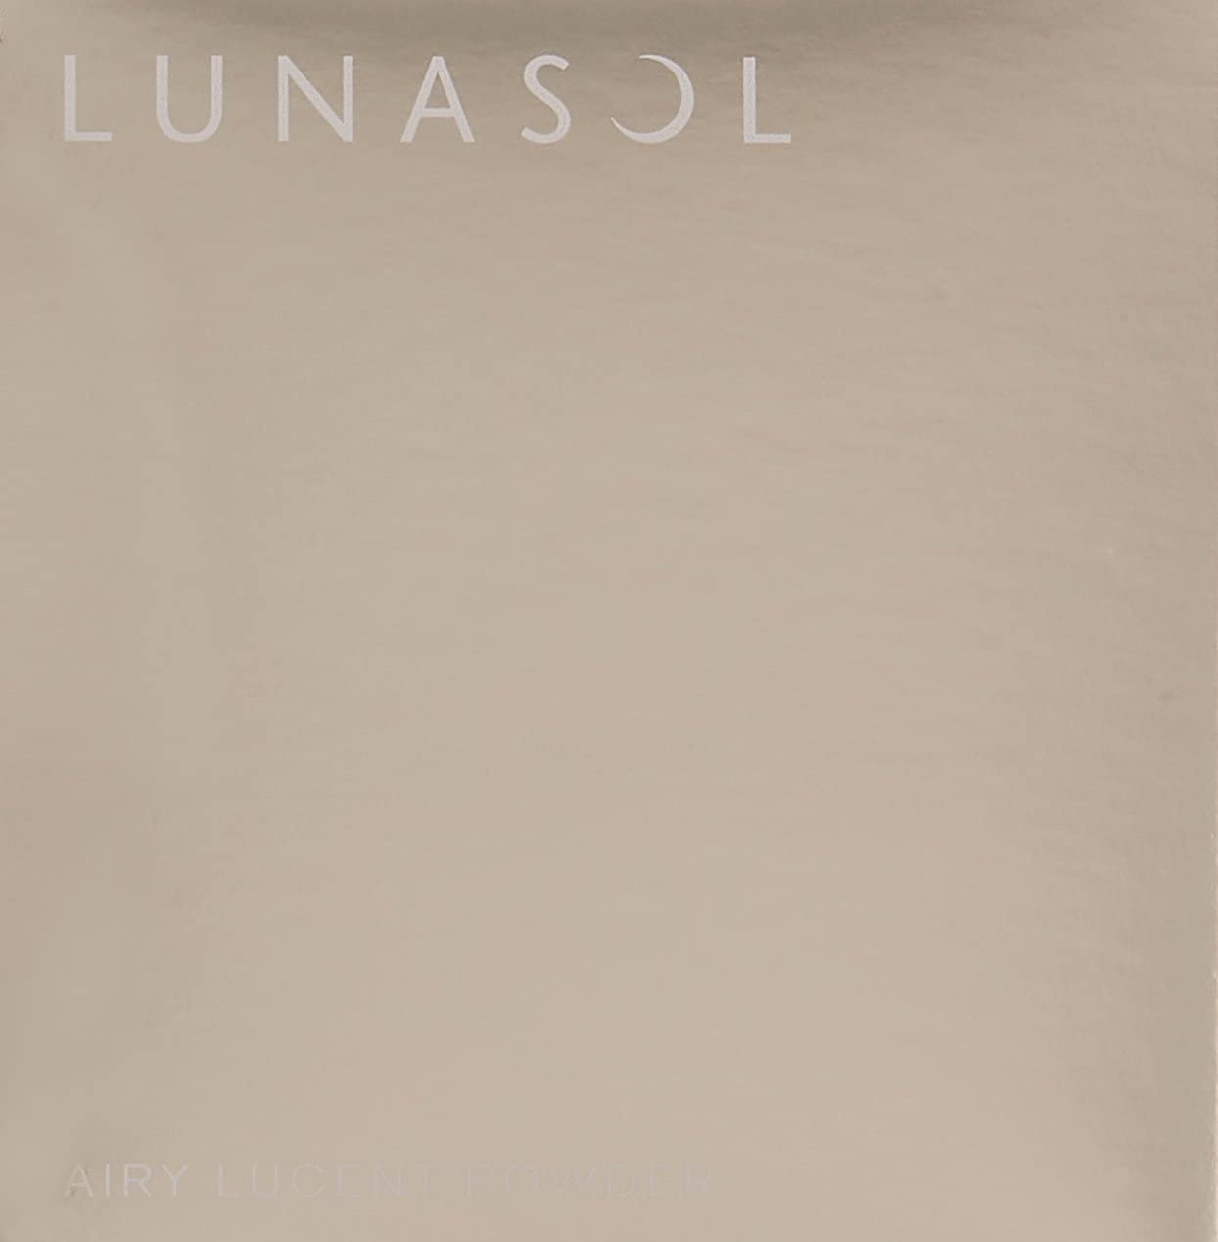 LUNASOL(ルナソル) エアリールーセントパウダーの商品画像サムネ2 